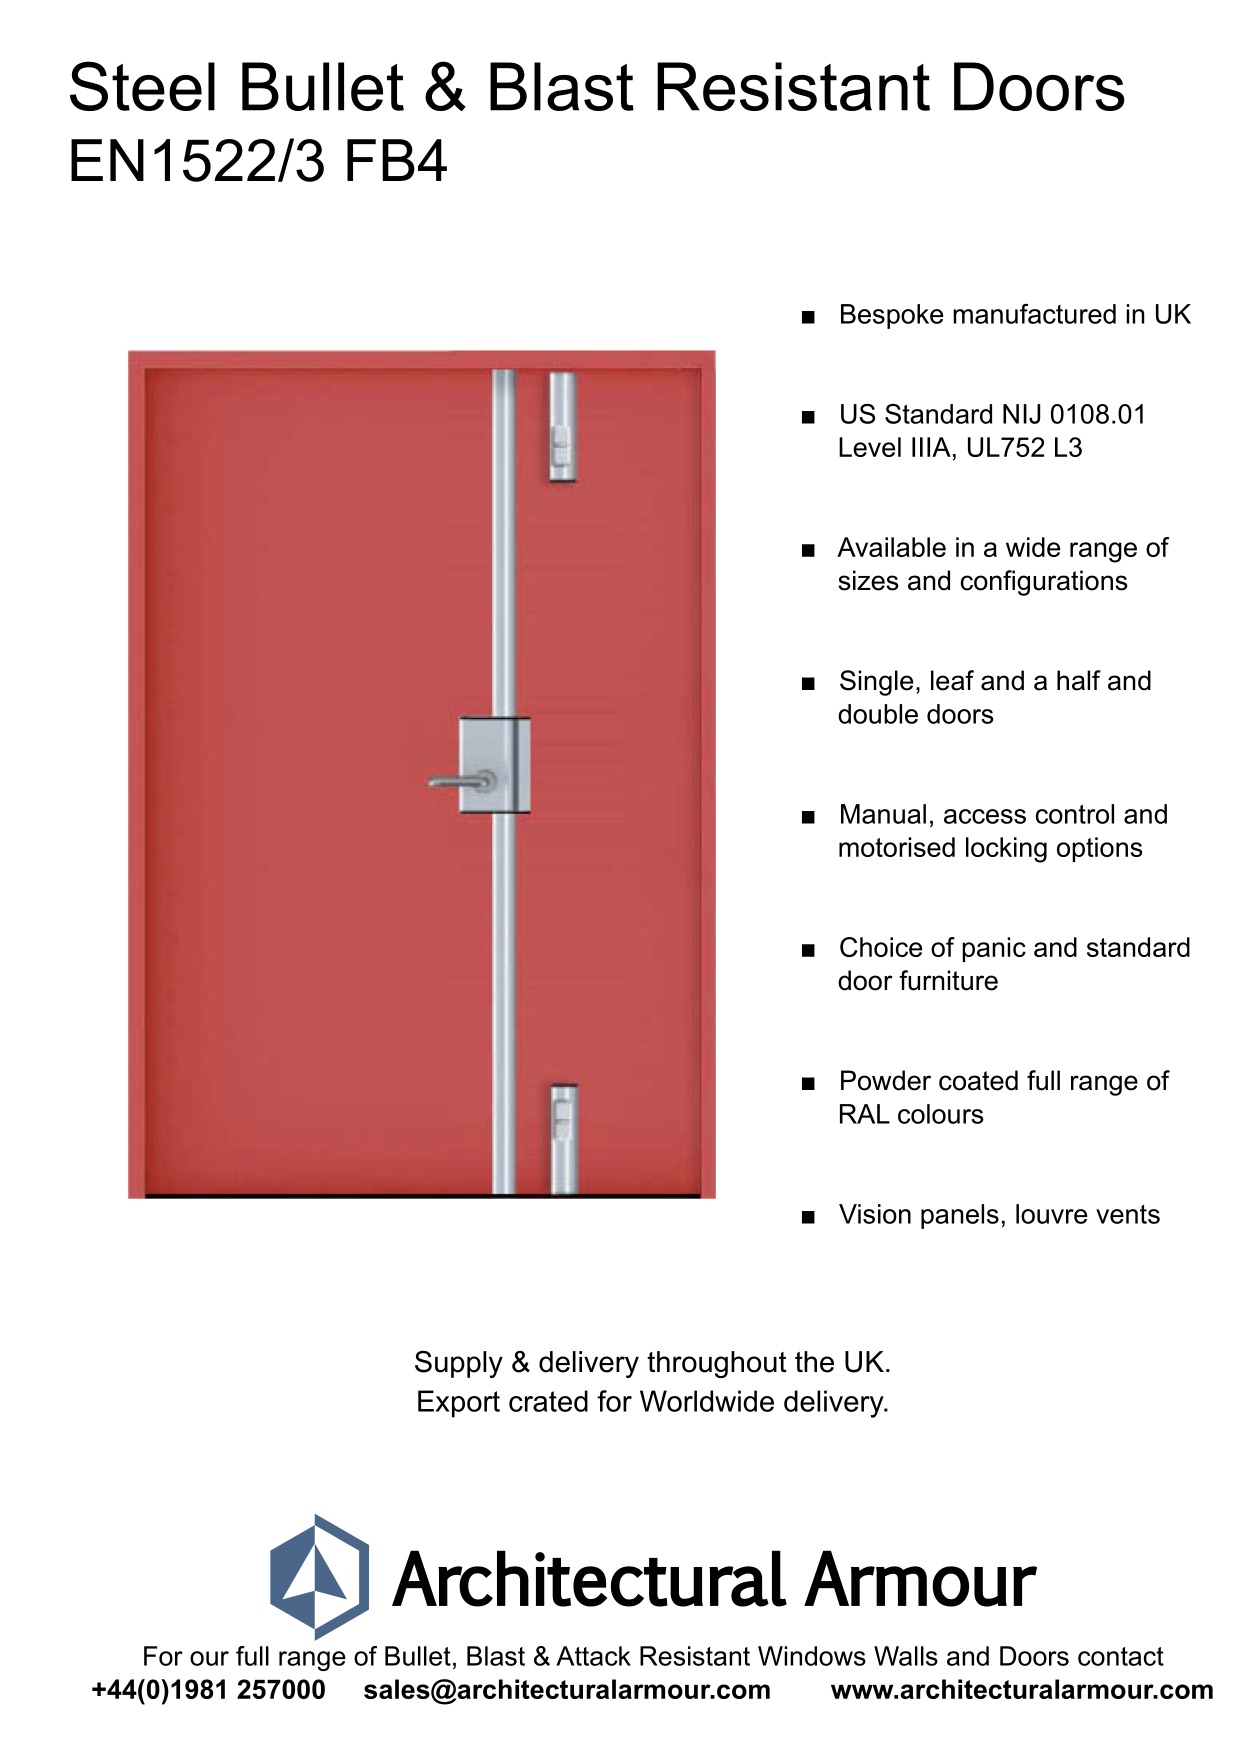 Blast-and-Ballistic-Resistant-metal-Doors-EN1522-3-FB4